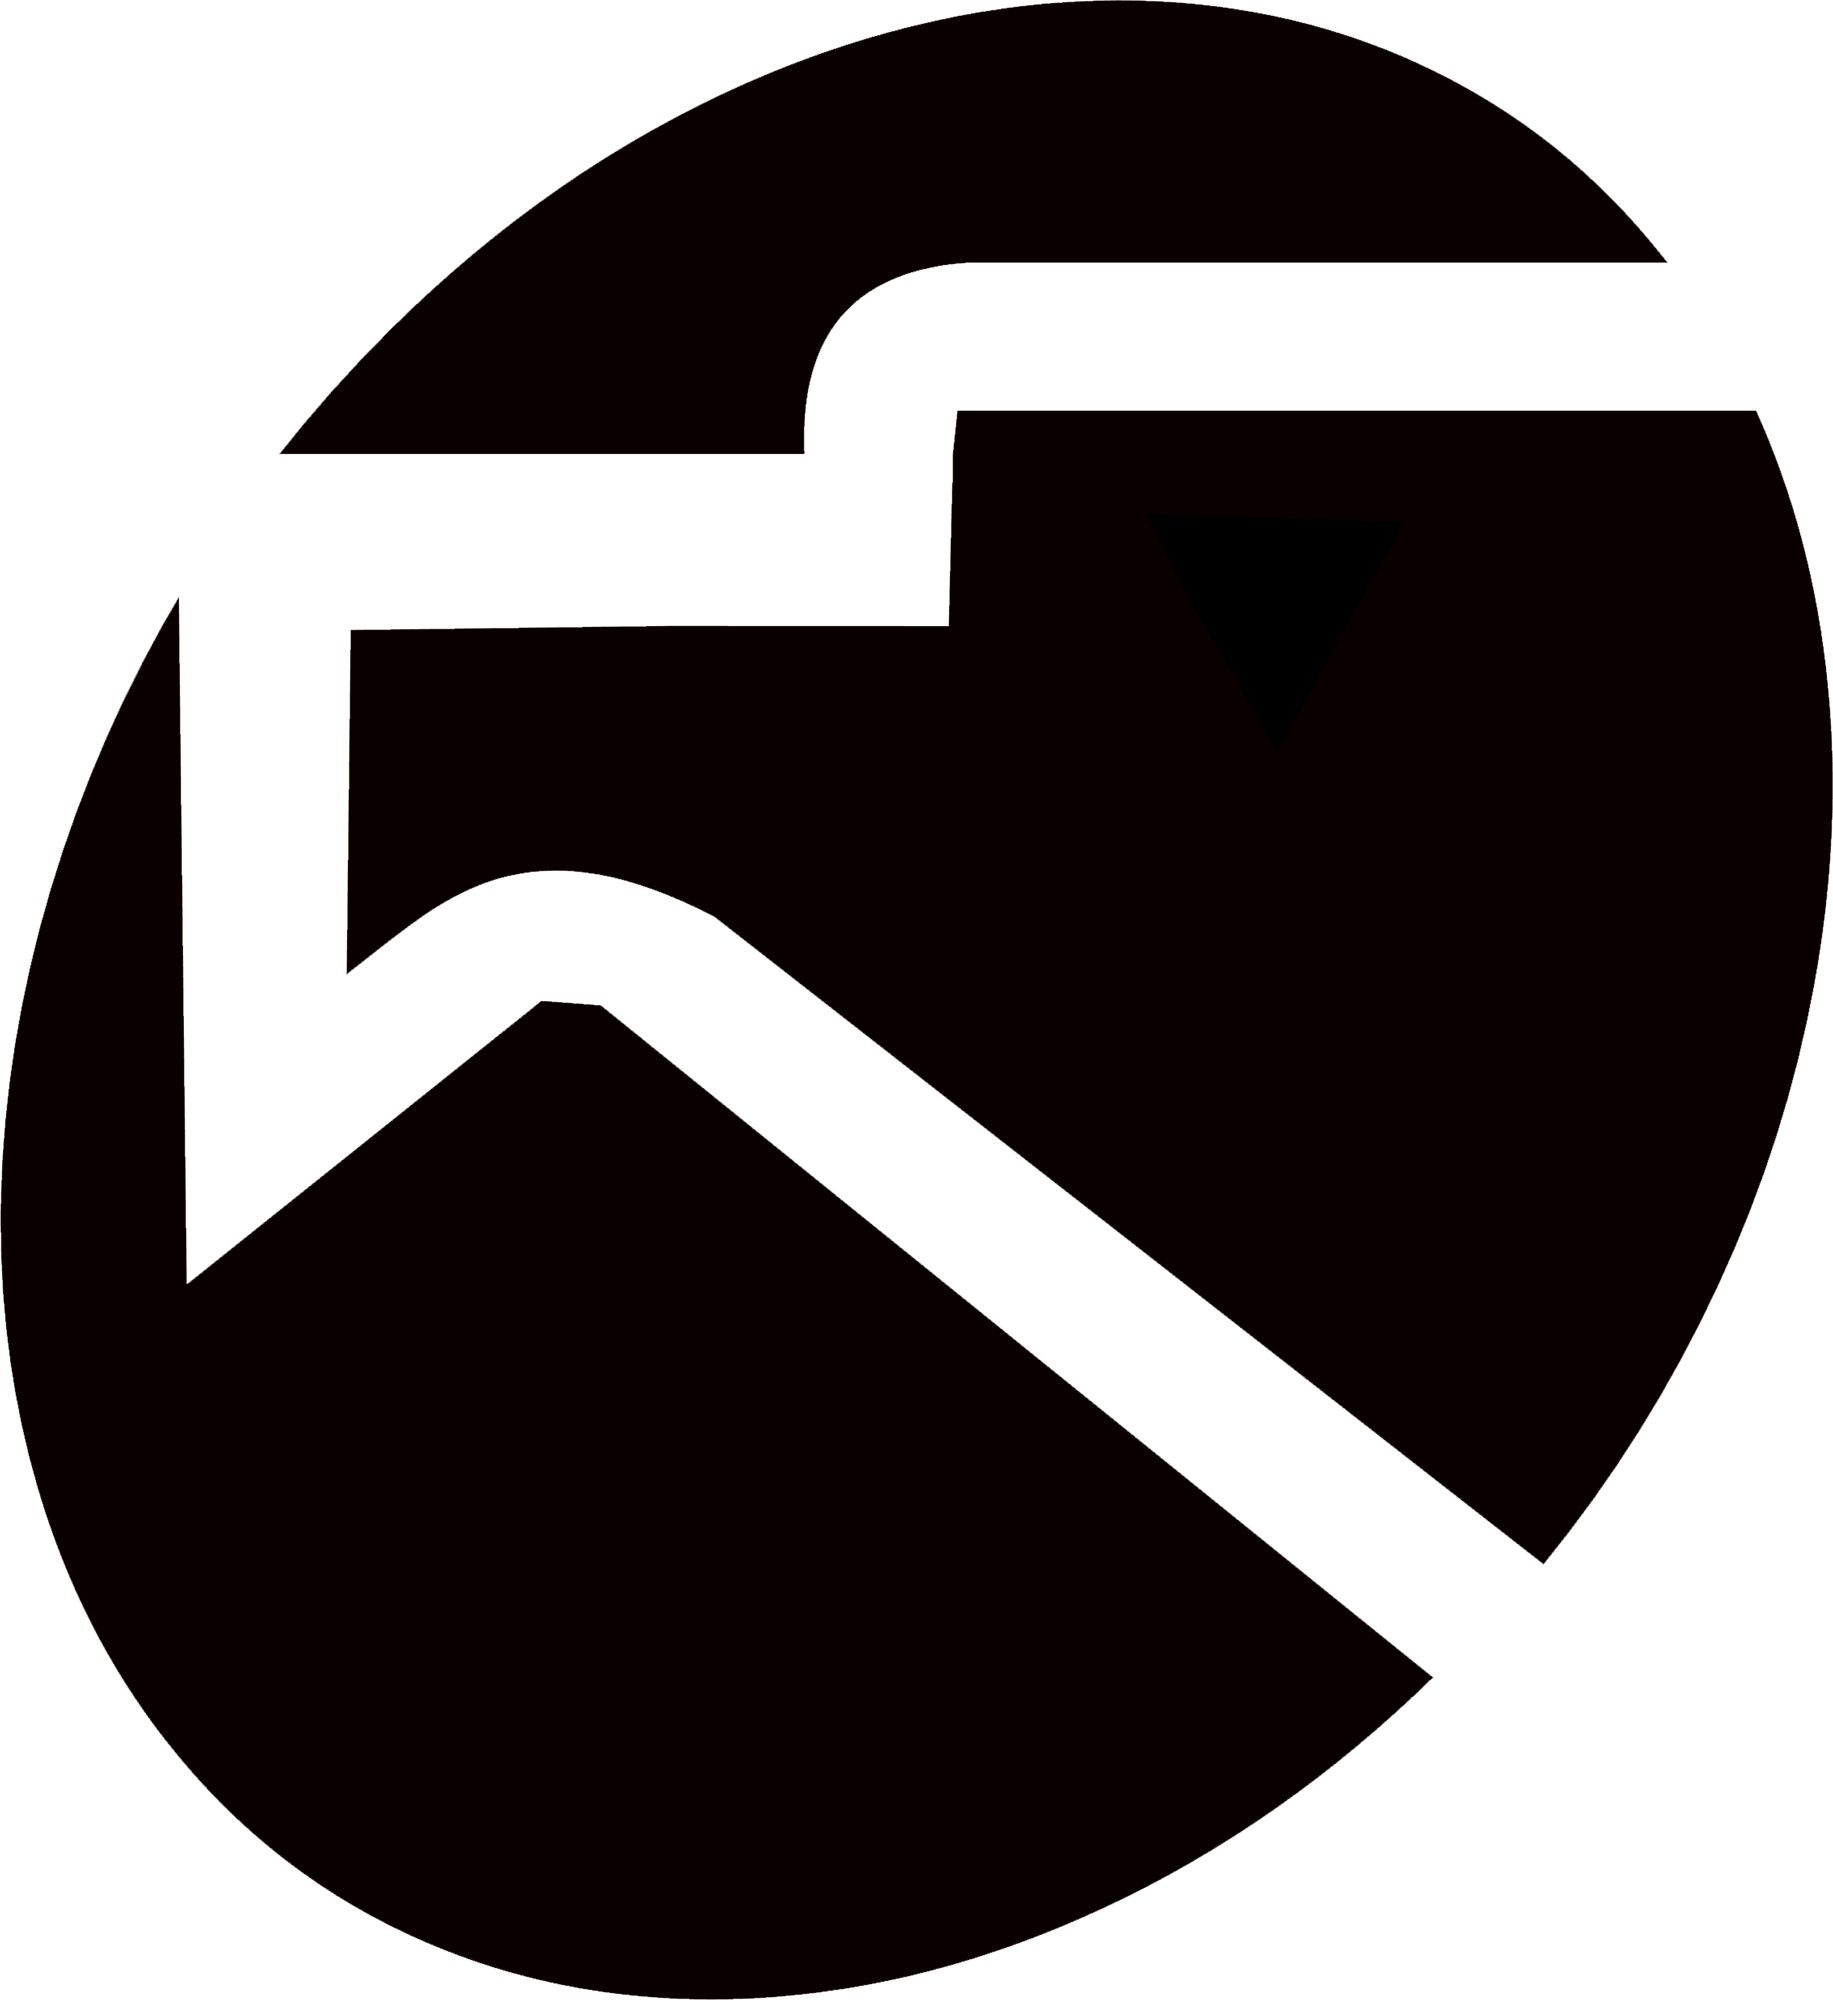 Istituto Luce Cinecittà Logo